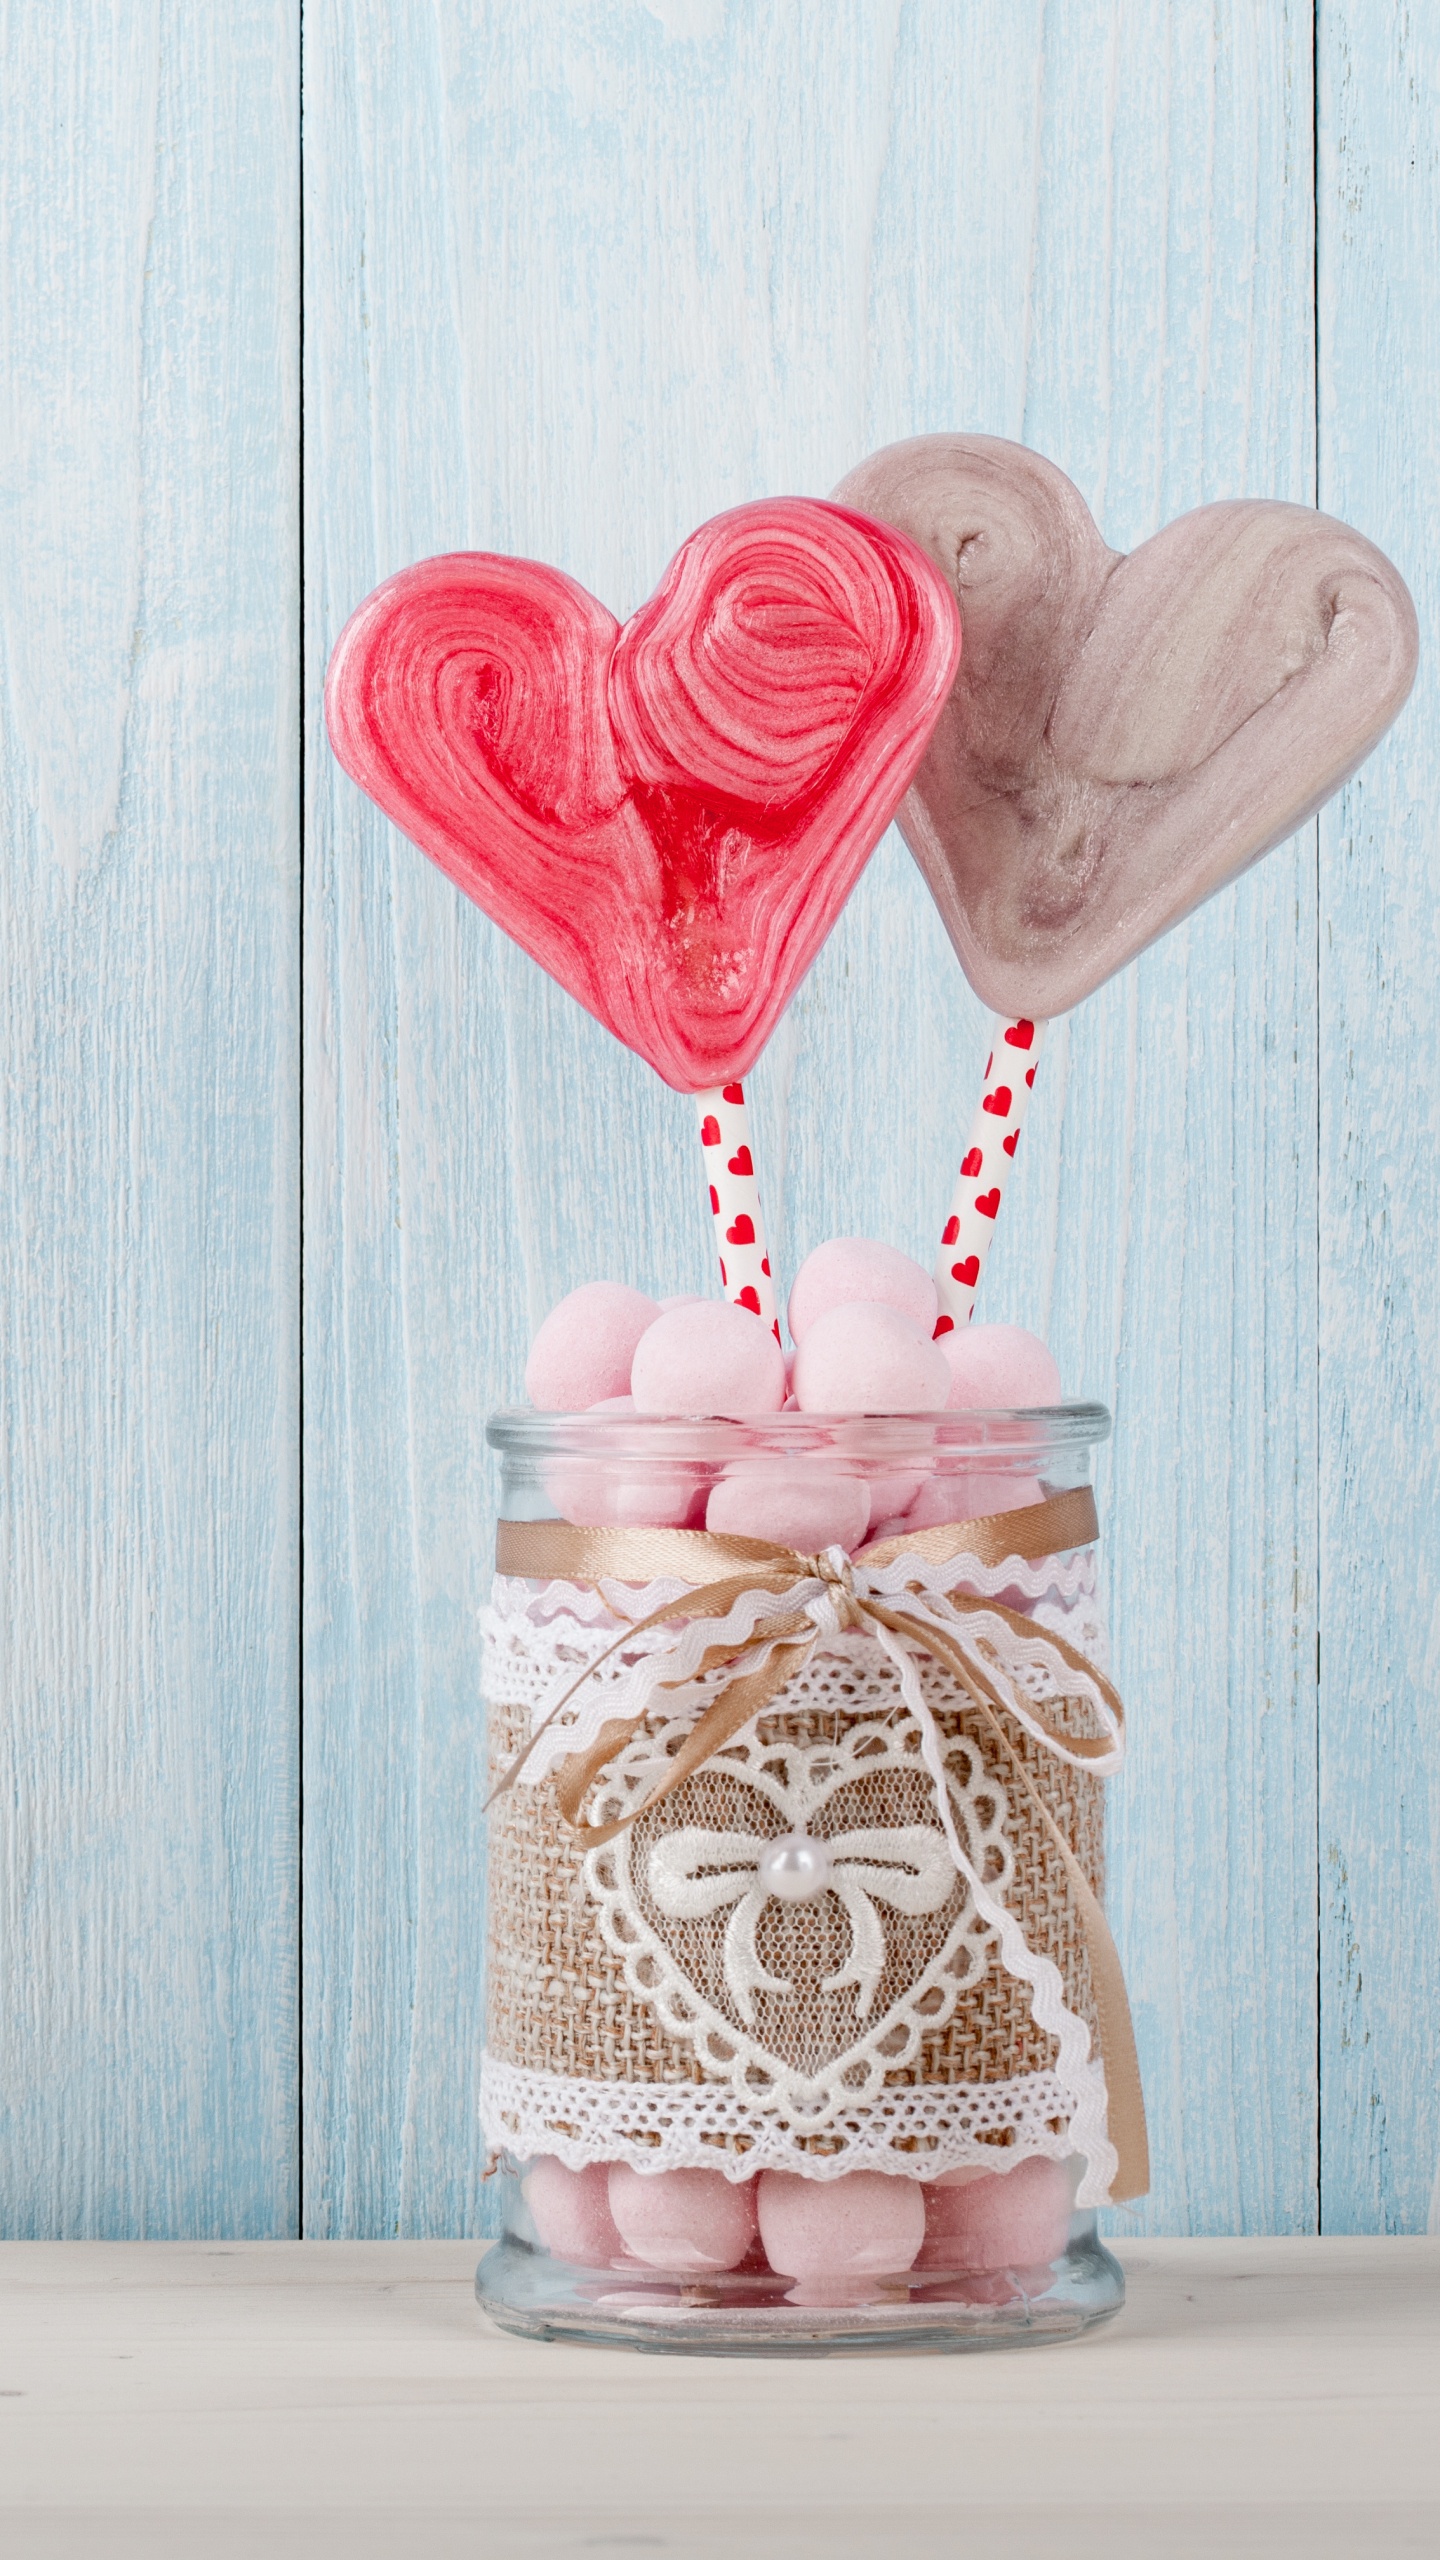 心脏, 浪漫, 粉红色, 爱情, 甜头 壁纸 1440x2560 允许